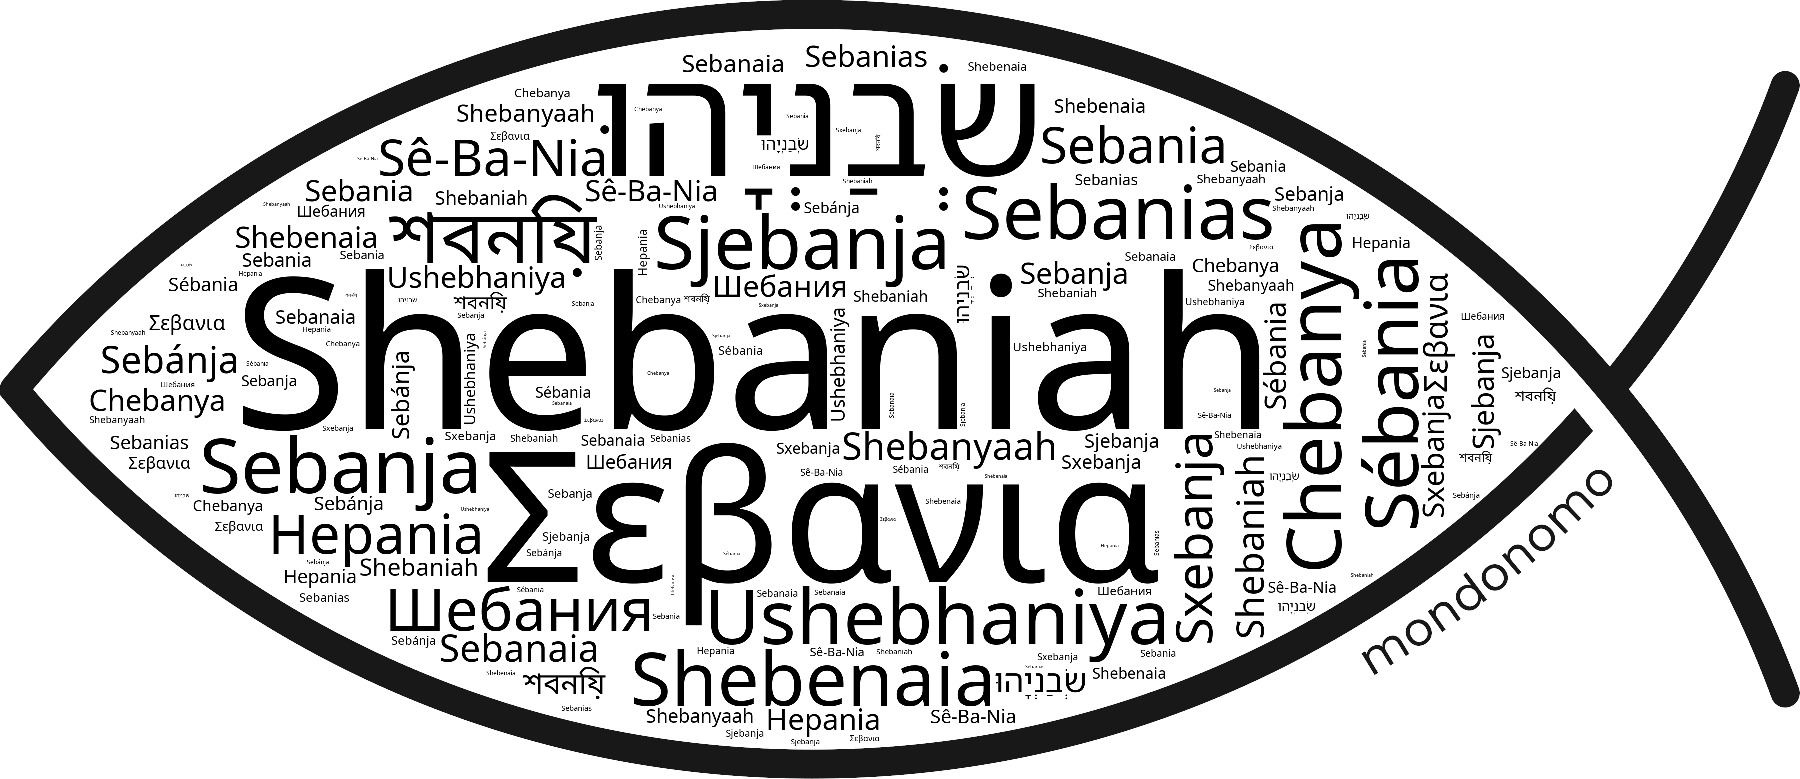 Name Shebaniah in the world's Bibles